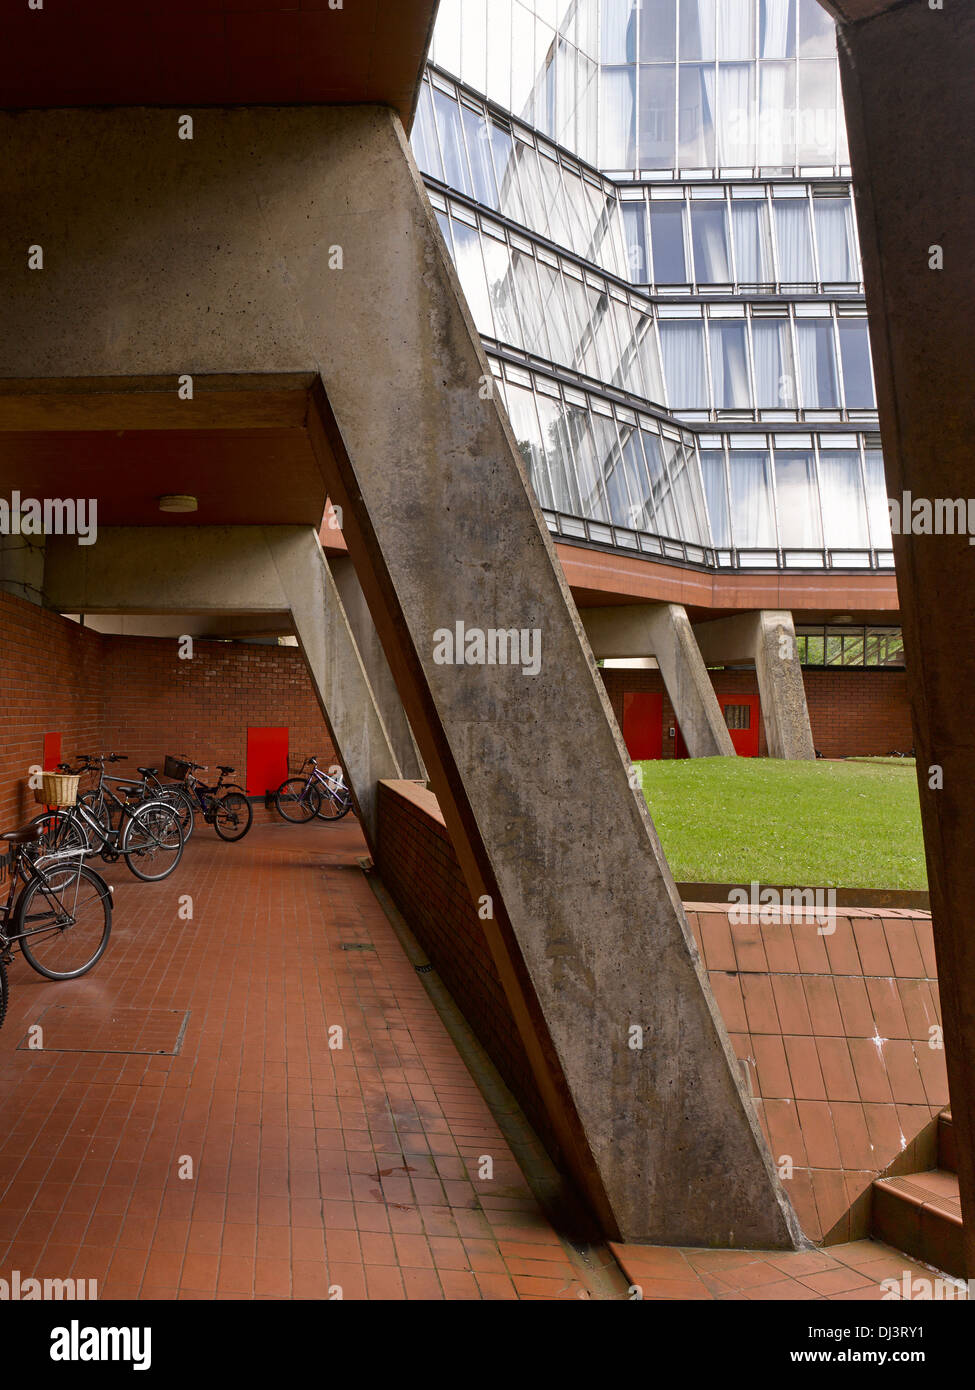 Le bâtiment Florey, Oxford, Royaume-Uni. Architecte : Sir James Stirling, 1971. Vue extérieure, cour intérieure de l'allée piétonnière. Banque D'Images